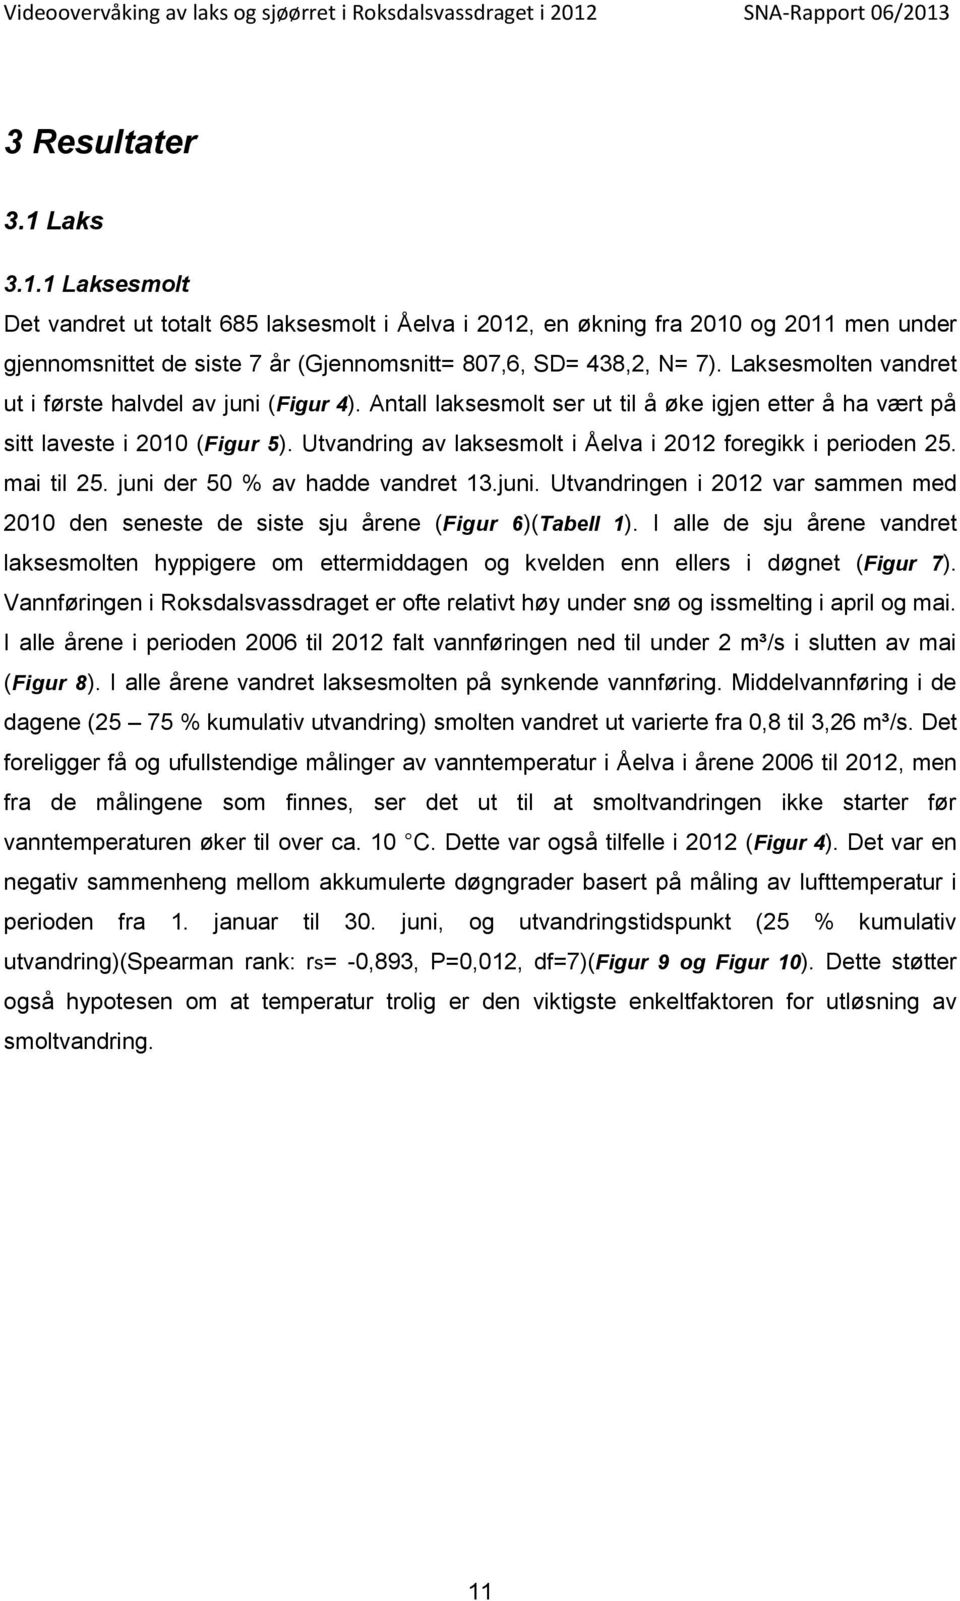 Utvandring av laksesmolt i Åelva i 212 foregikk i perioden 25. mai til 25. juni der 5 % av hadde vandret 13.juni. Utvandringen i 212 var sammen med 21 den seneste de siste sju årene (Figur 6)(Tabell 1).